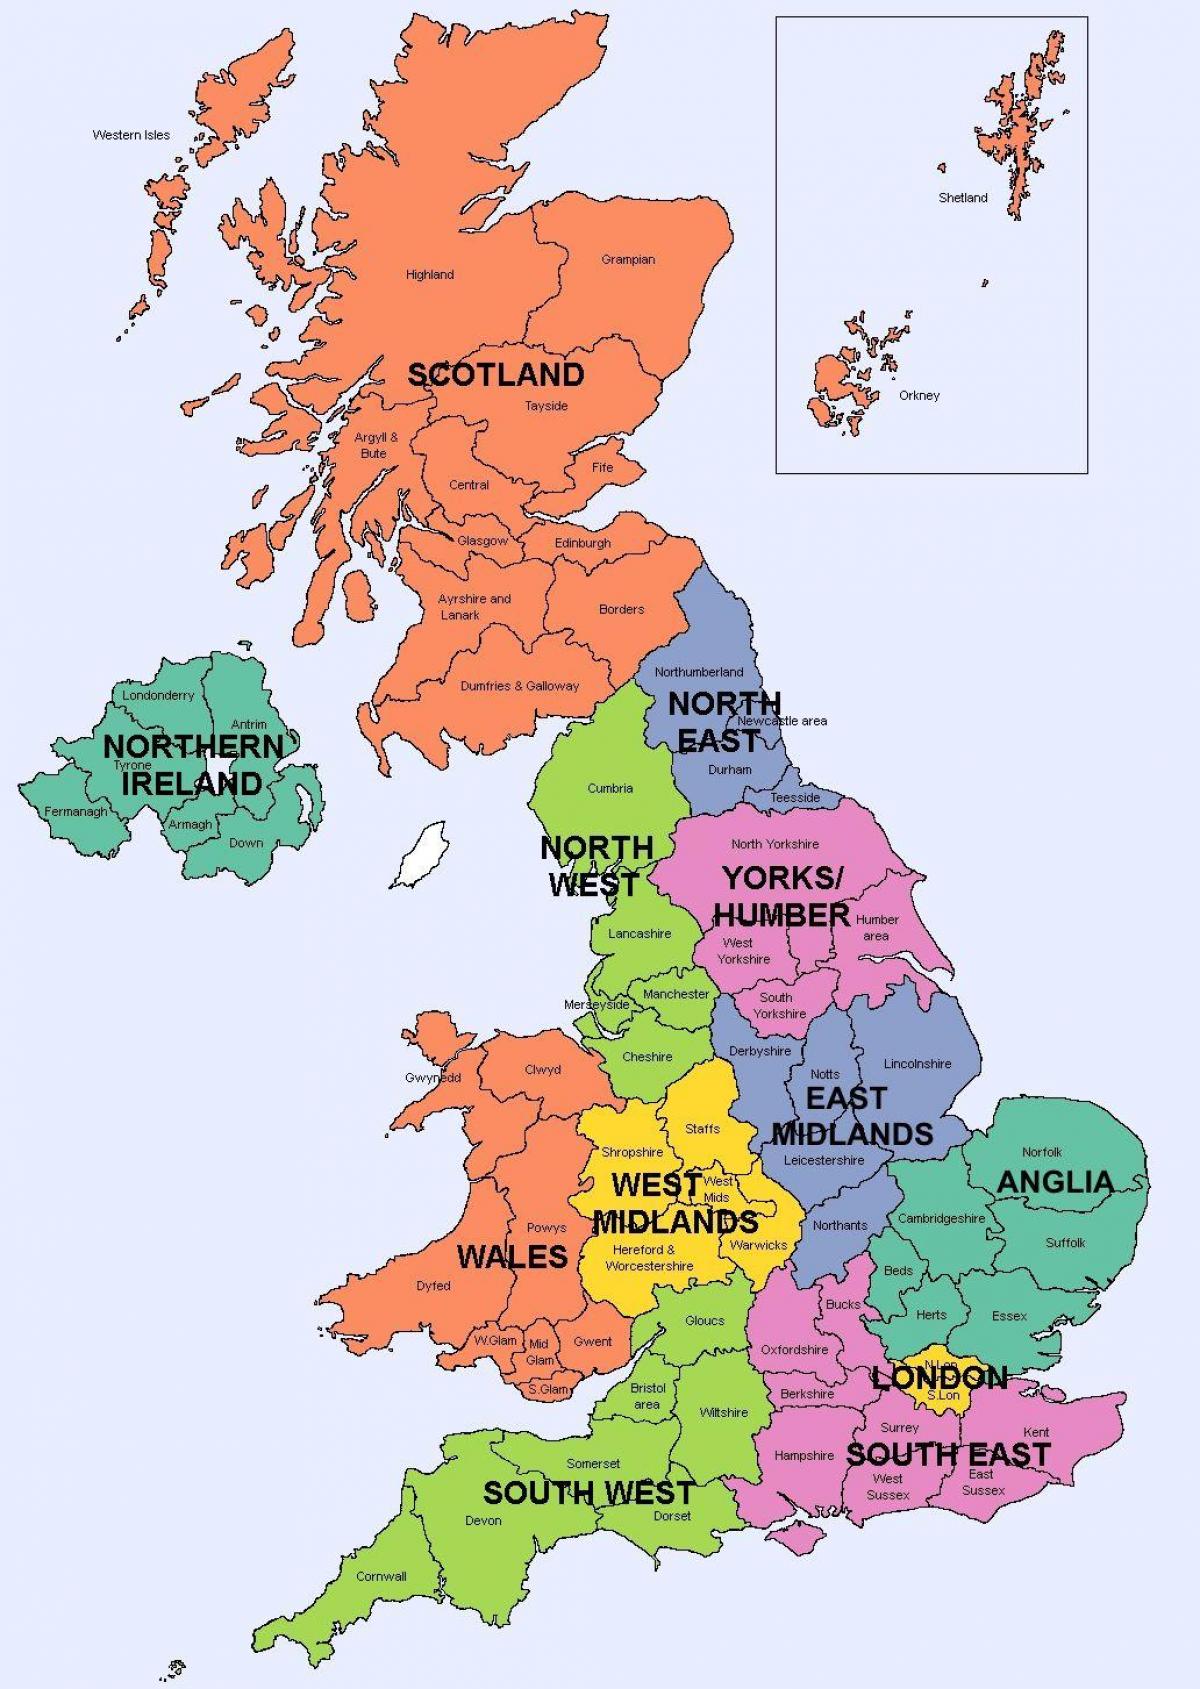 Mapa De Las Regiones Del Reino Unido Uk Mapa Político Y Estatal Del Reino Unido Uk